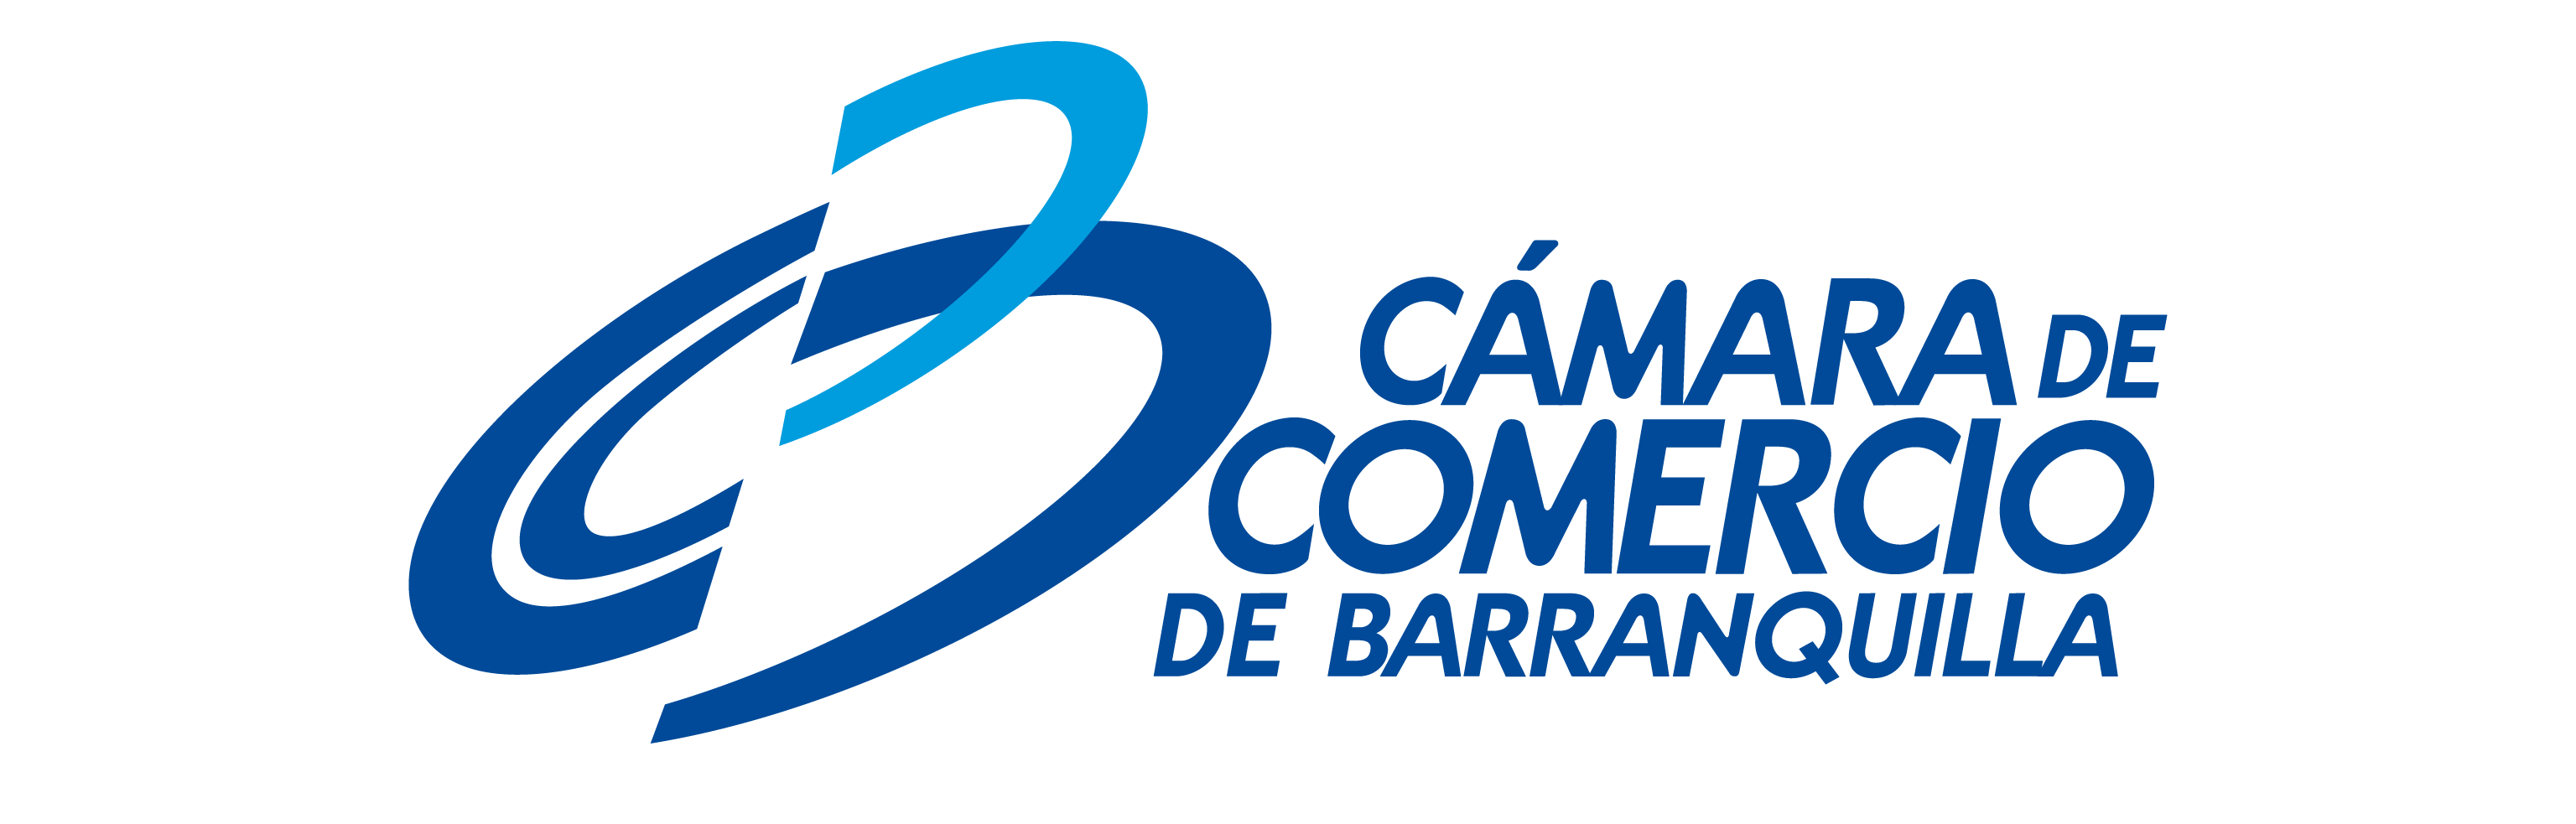 Logotipo Cámara de Comercio Barranquilla